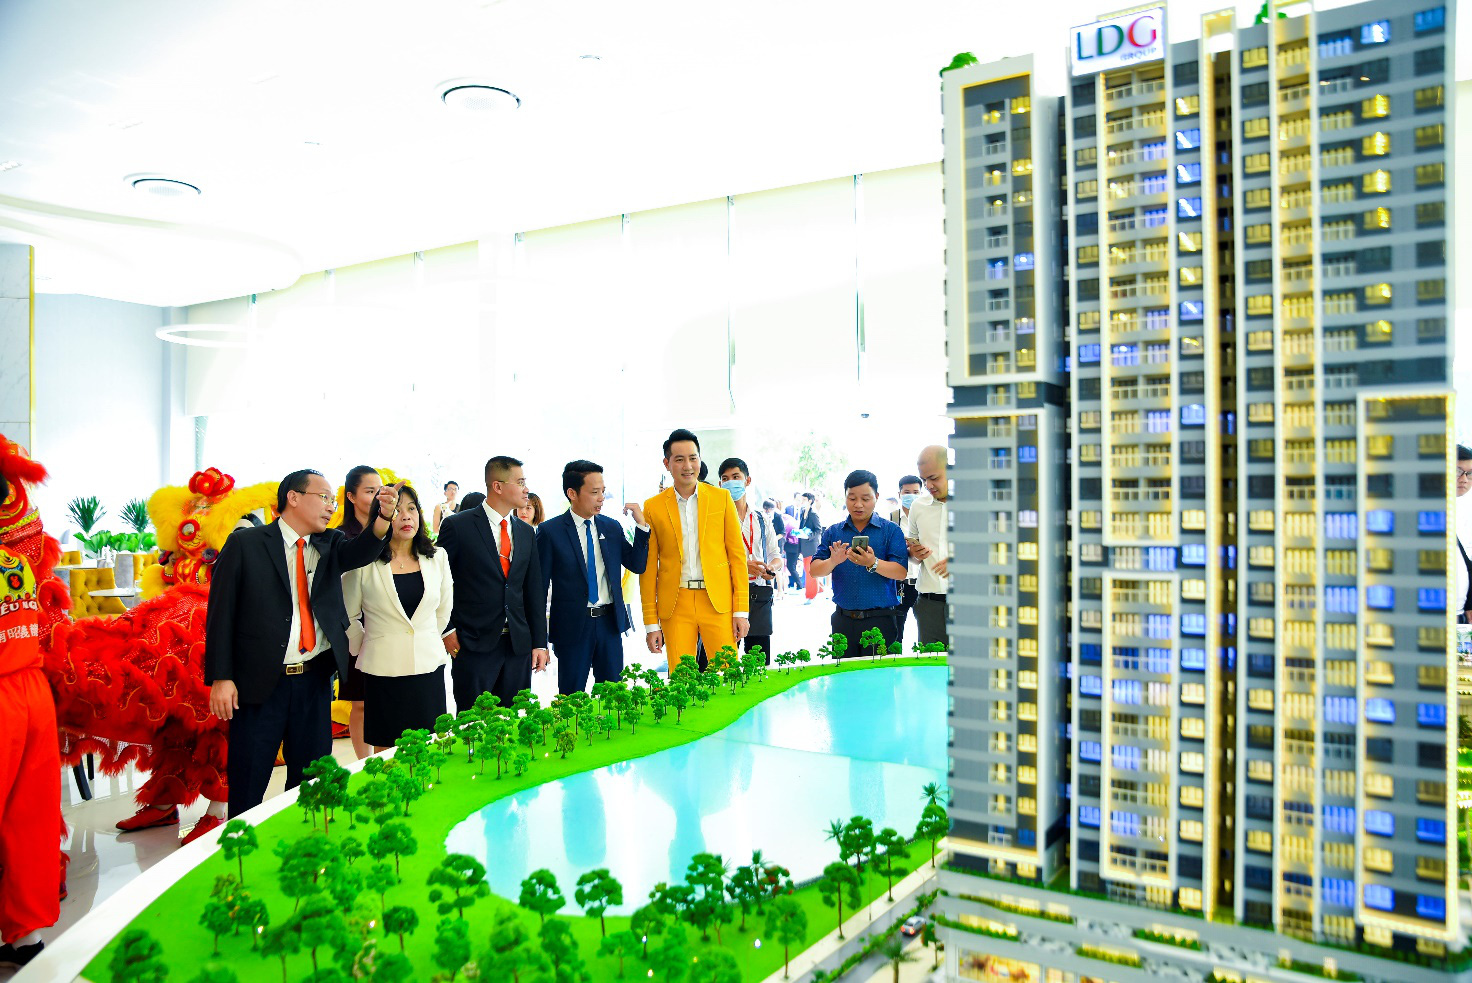 LDG Group khai trương nhà mẫu khu căn hộ cao cấp ở khu Đông TP.HCM - Ảnh 1.